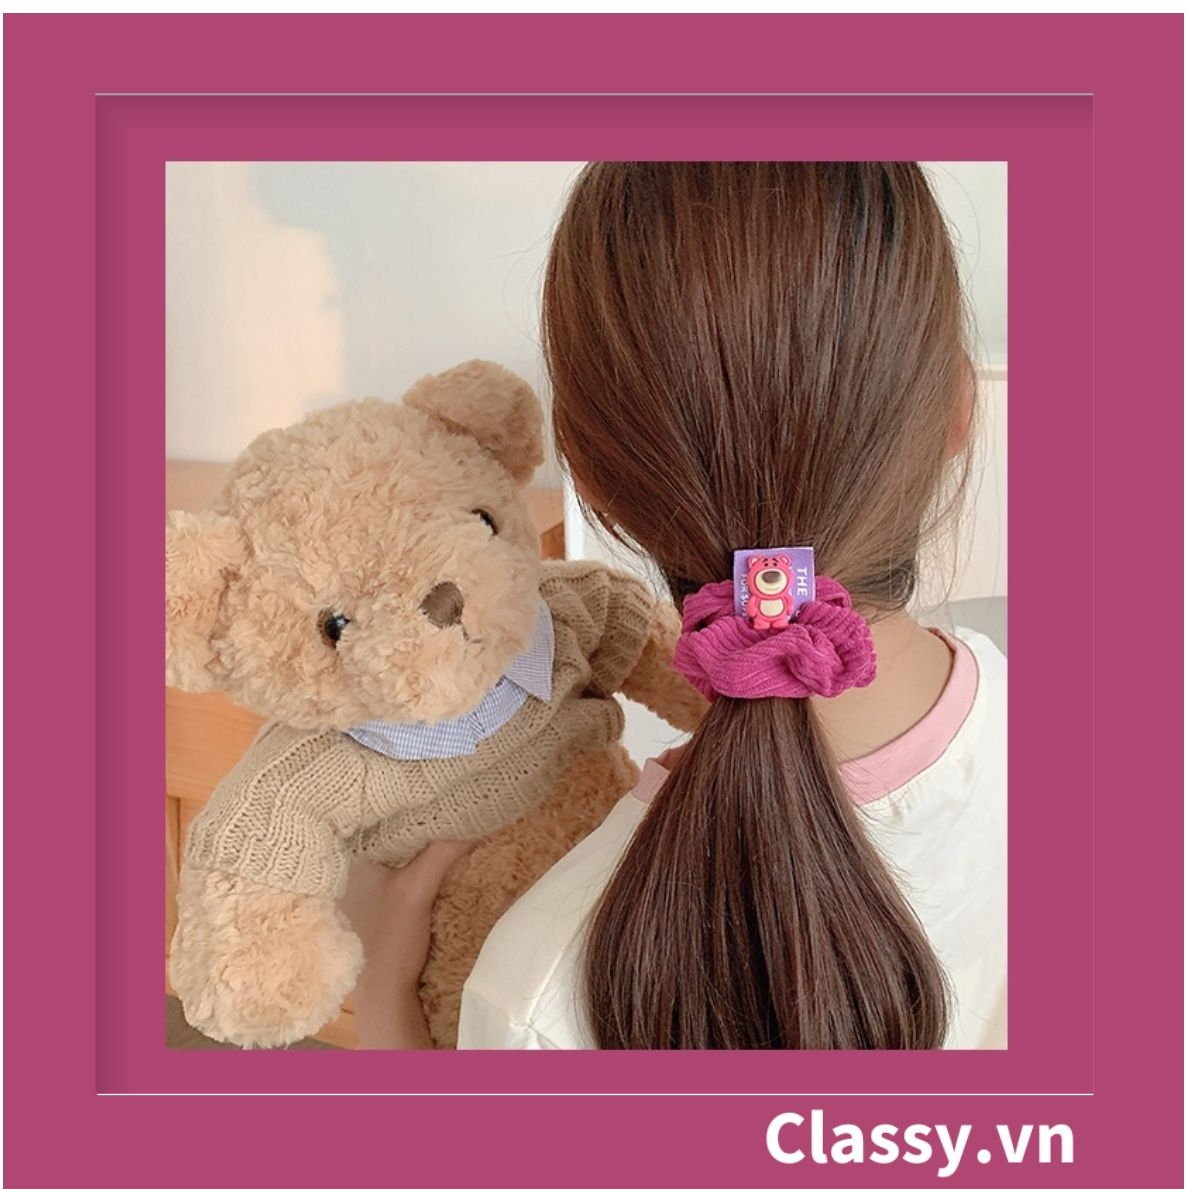  PK799 Bộ sưu tập dây cột tóc băng đô và kẹp tóc màu hồng tía, in hình gấu Teddy cute ngộ nghĩnh 